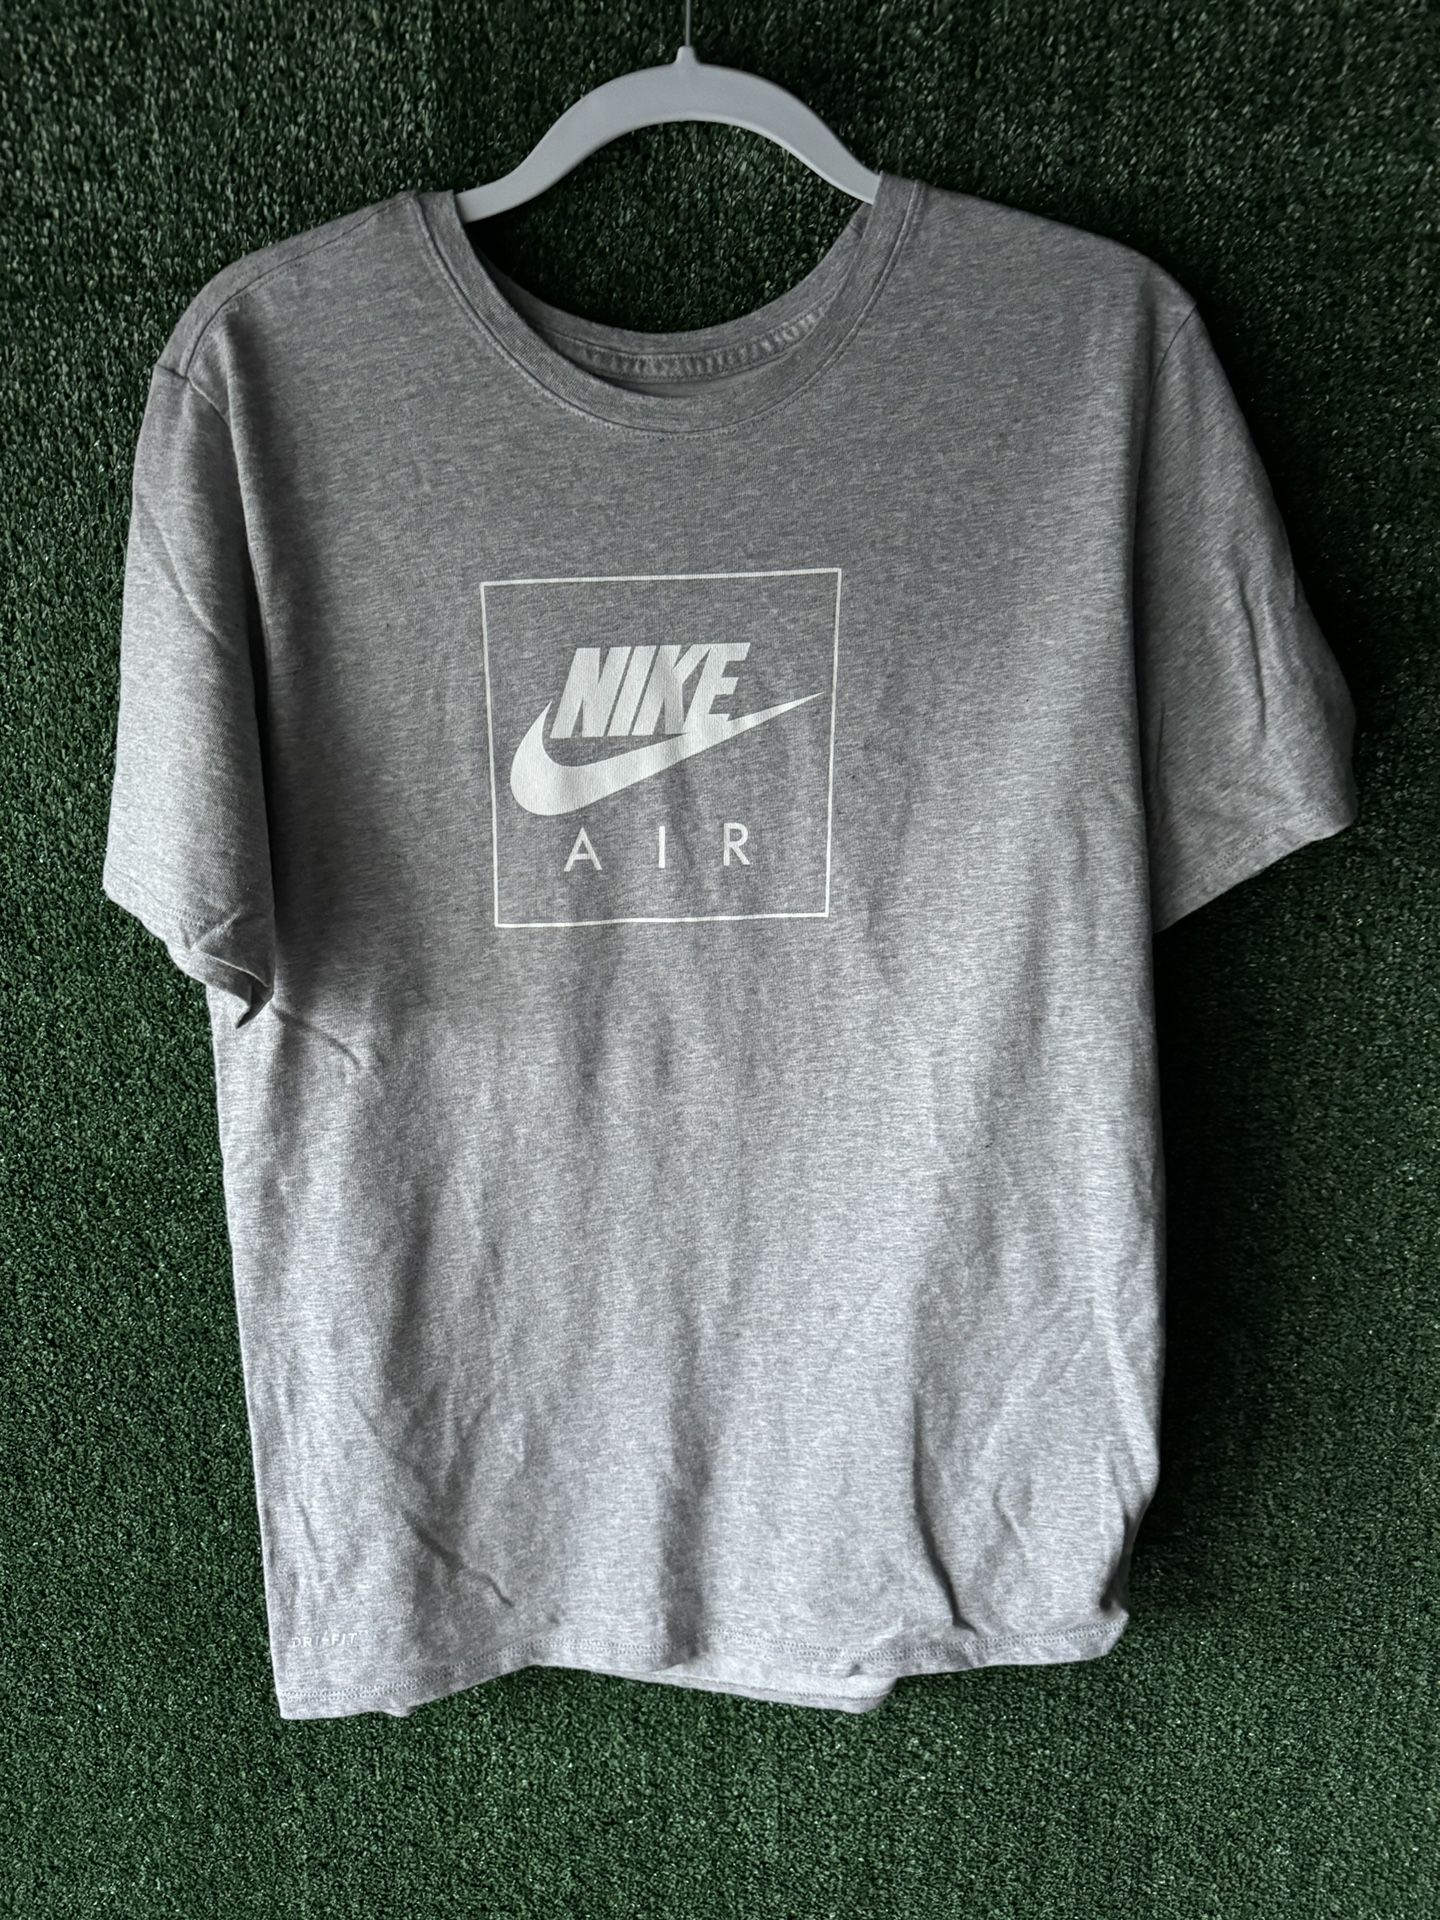 Nike Air Shirt Large 